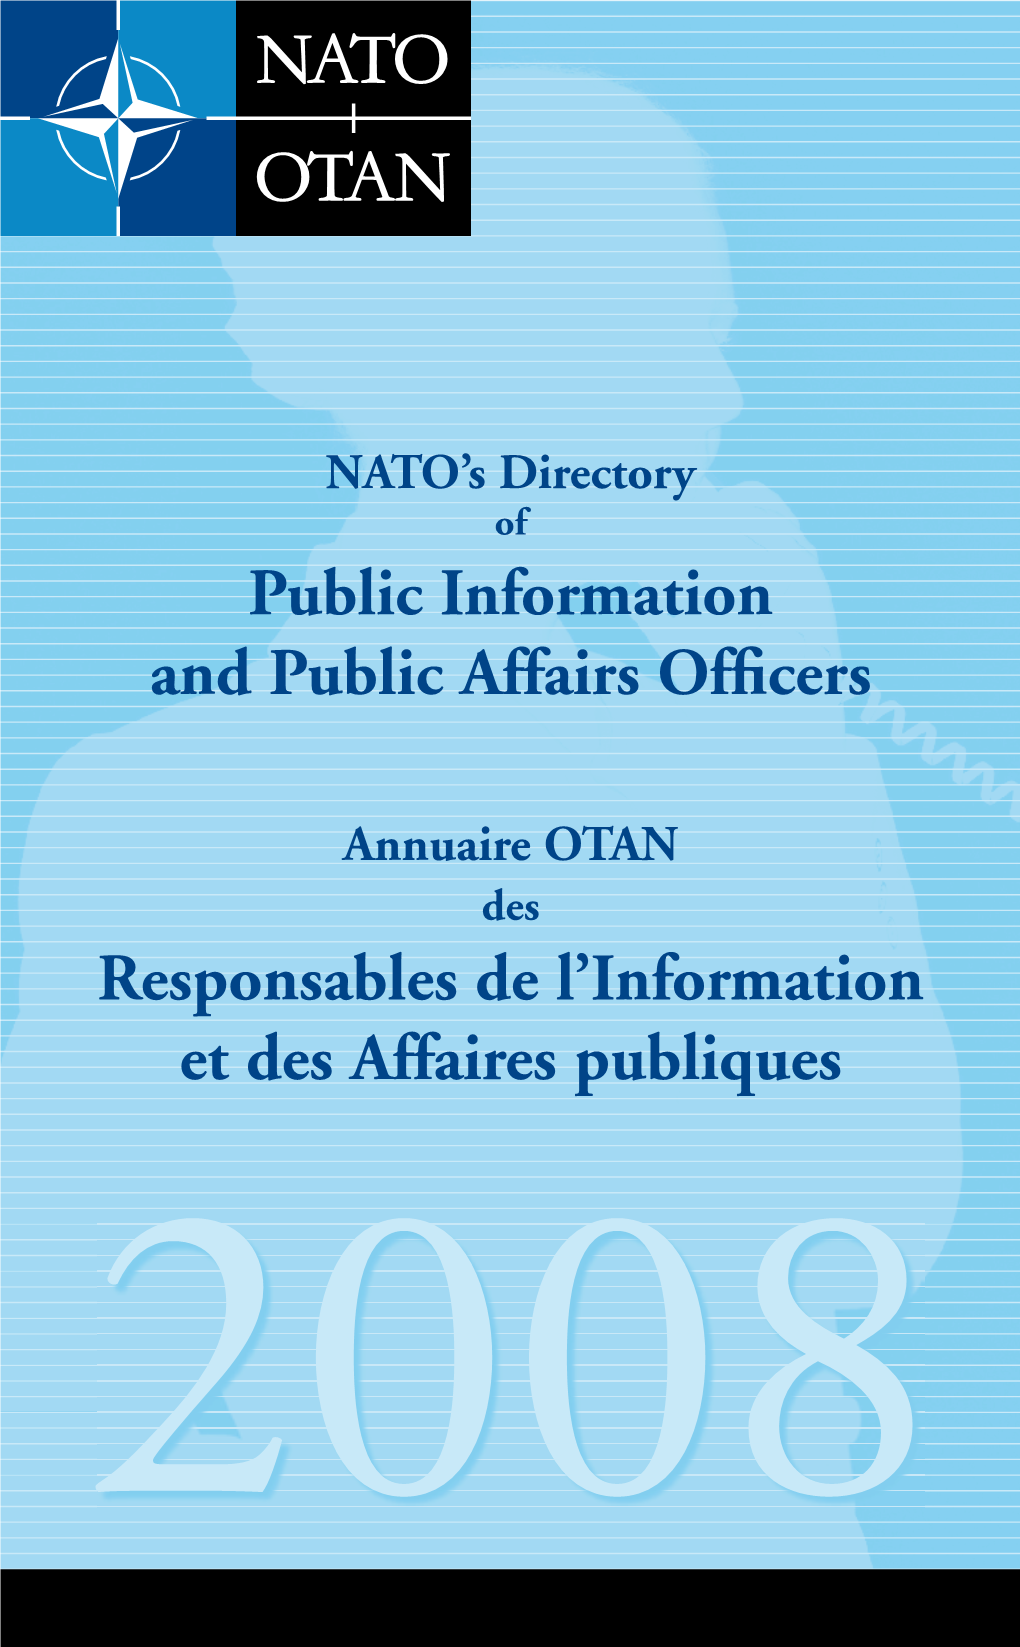 Public Information and Public Affairs Officers Responsables De L